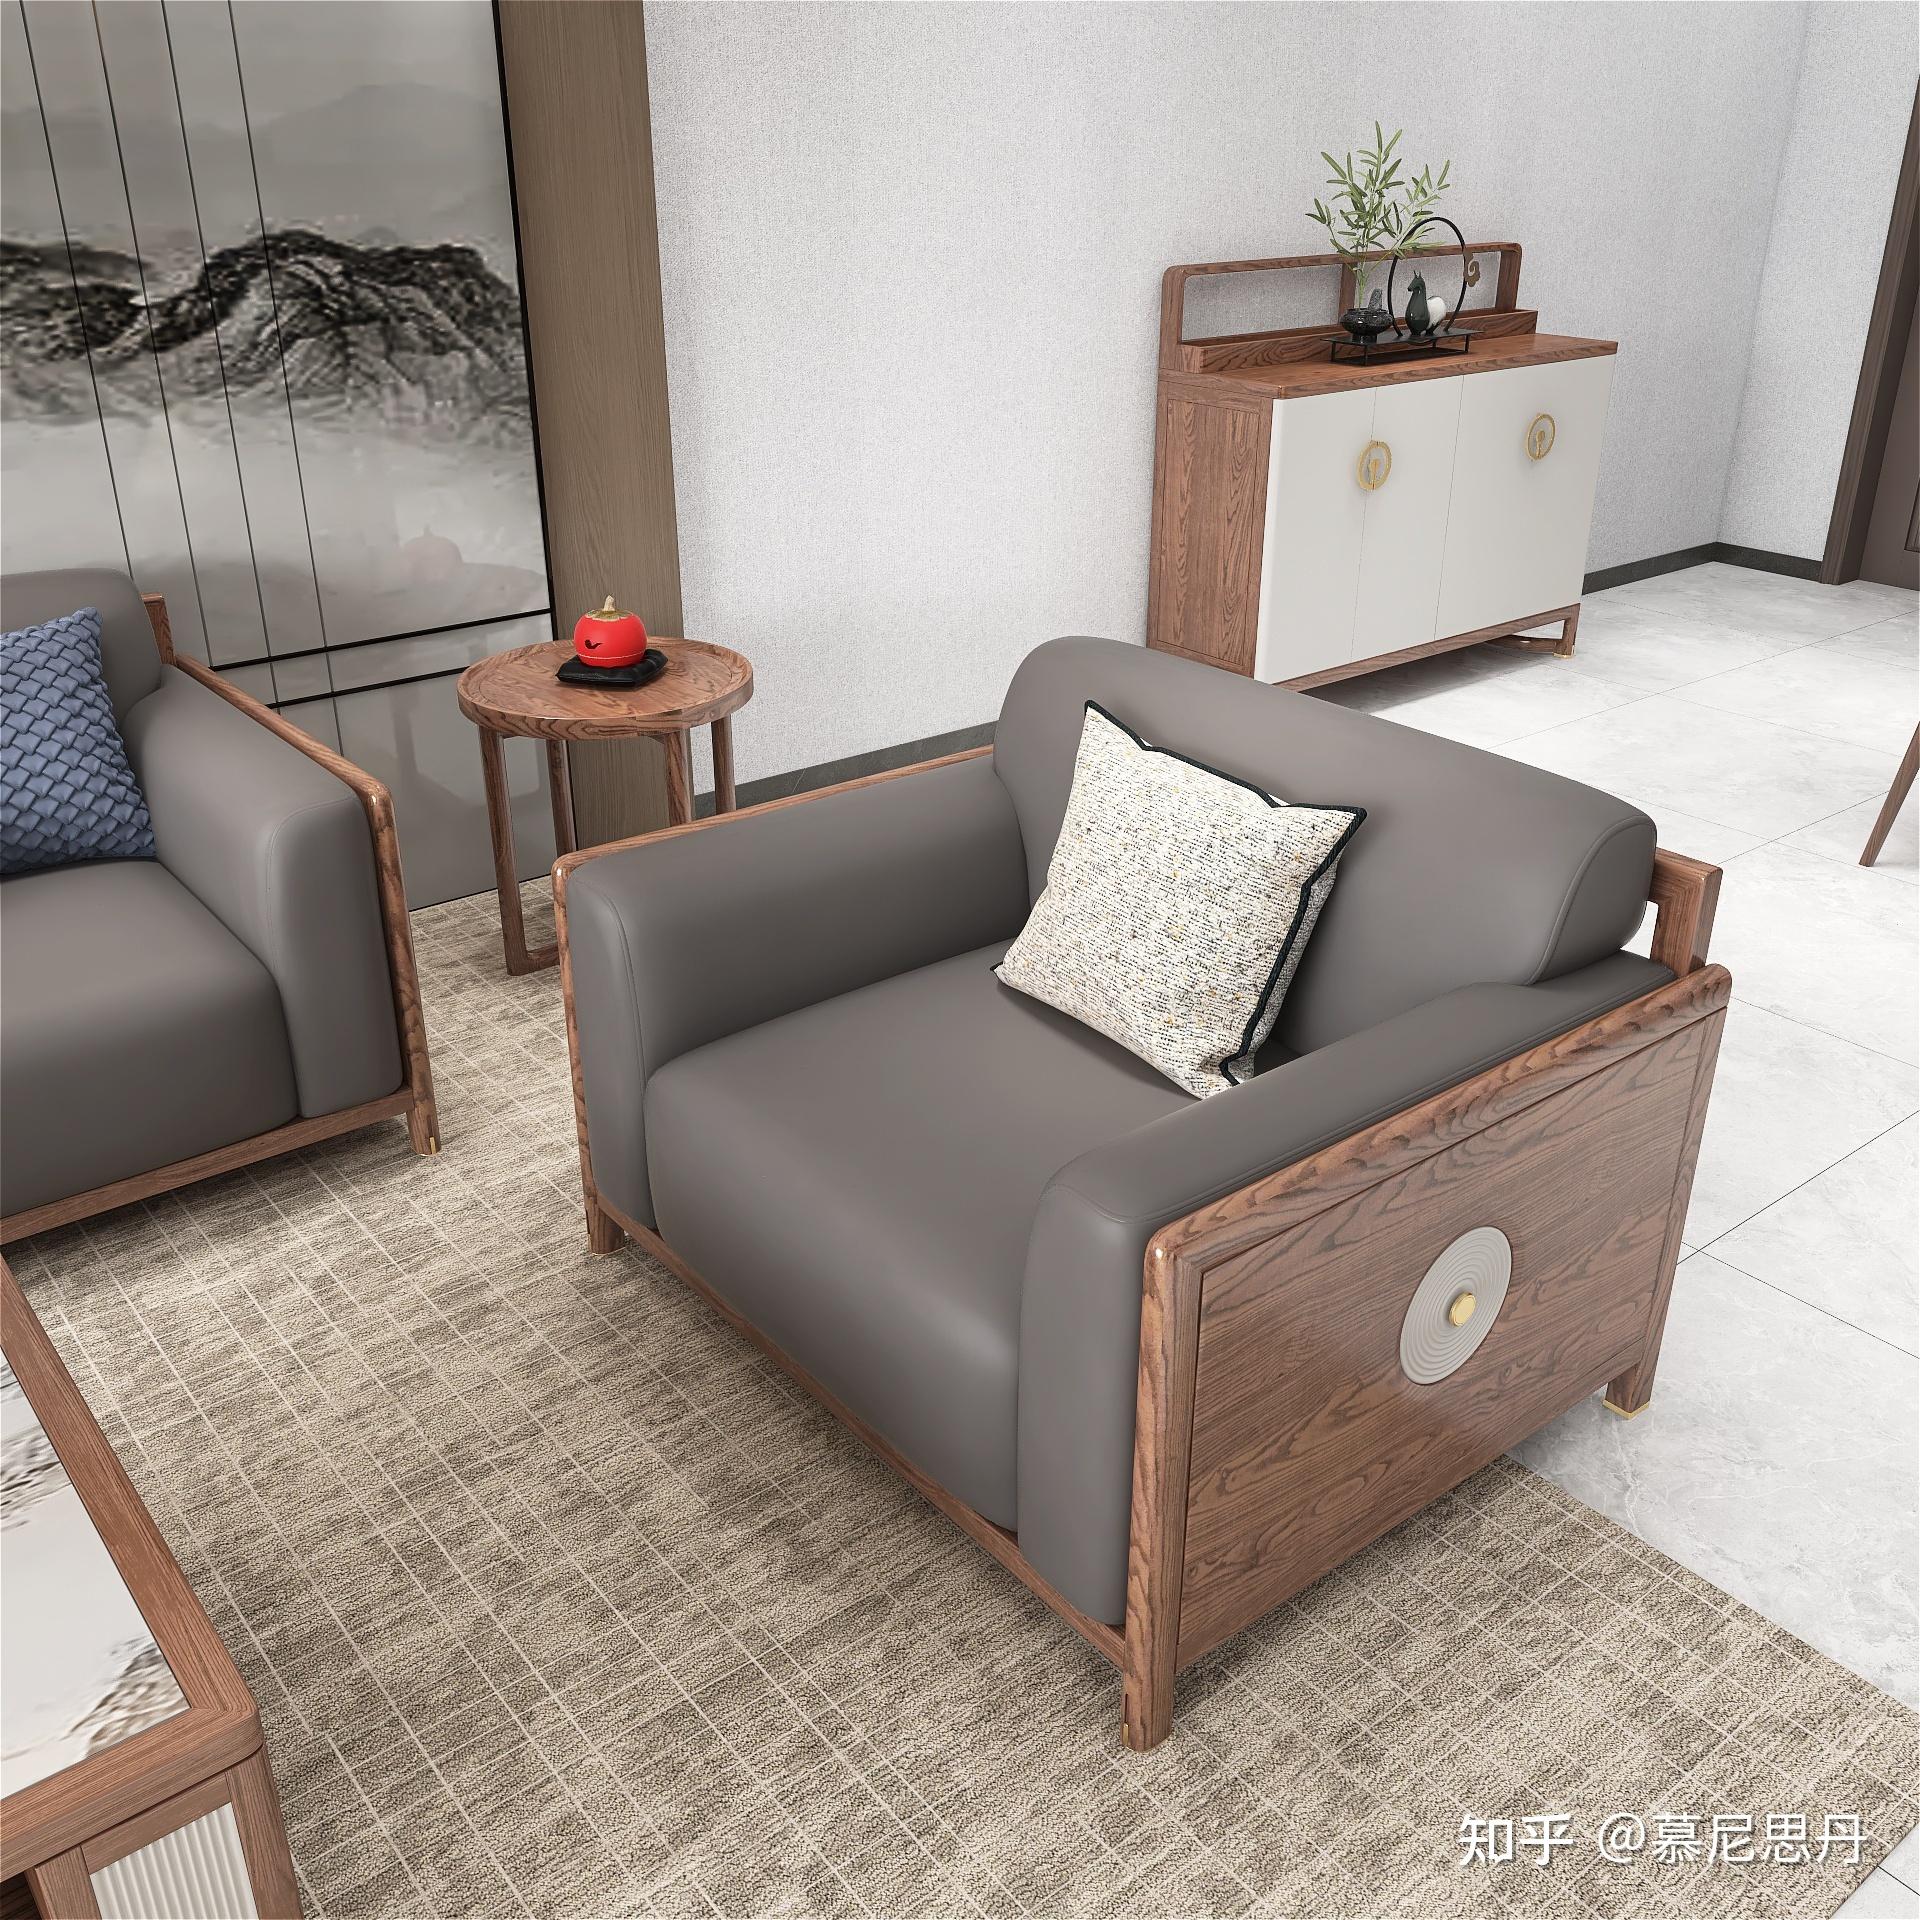 新中式沙发传承中国文化和匠心